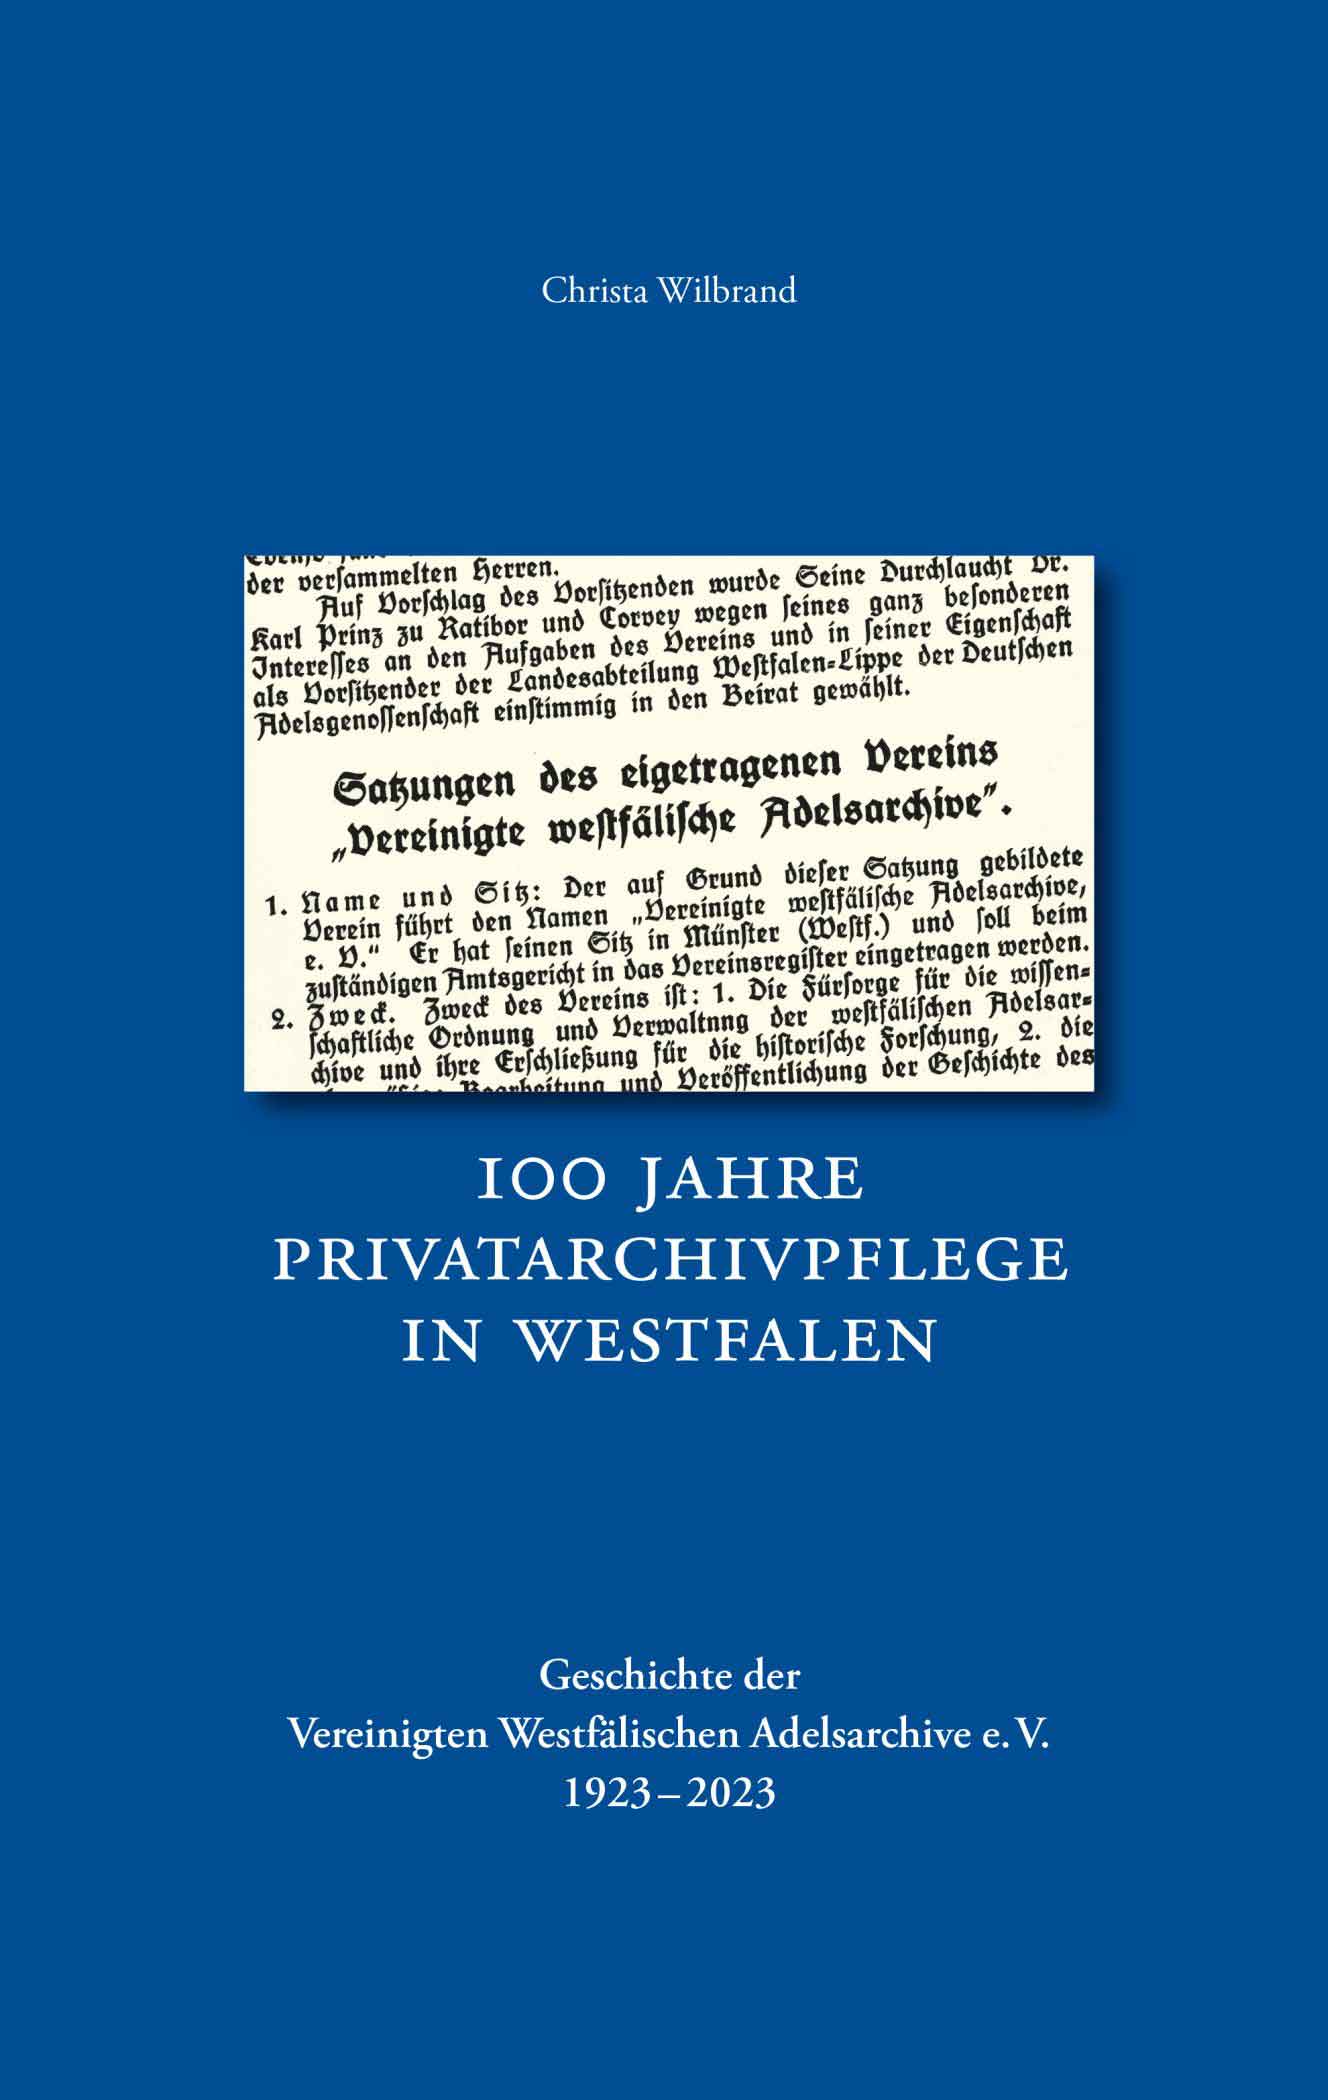 100 Jahre Vereinigte Westfälische Adelsarchive – Festakt in Münster